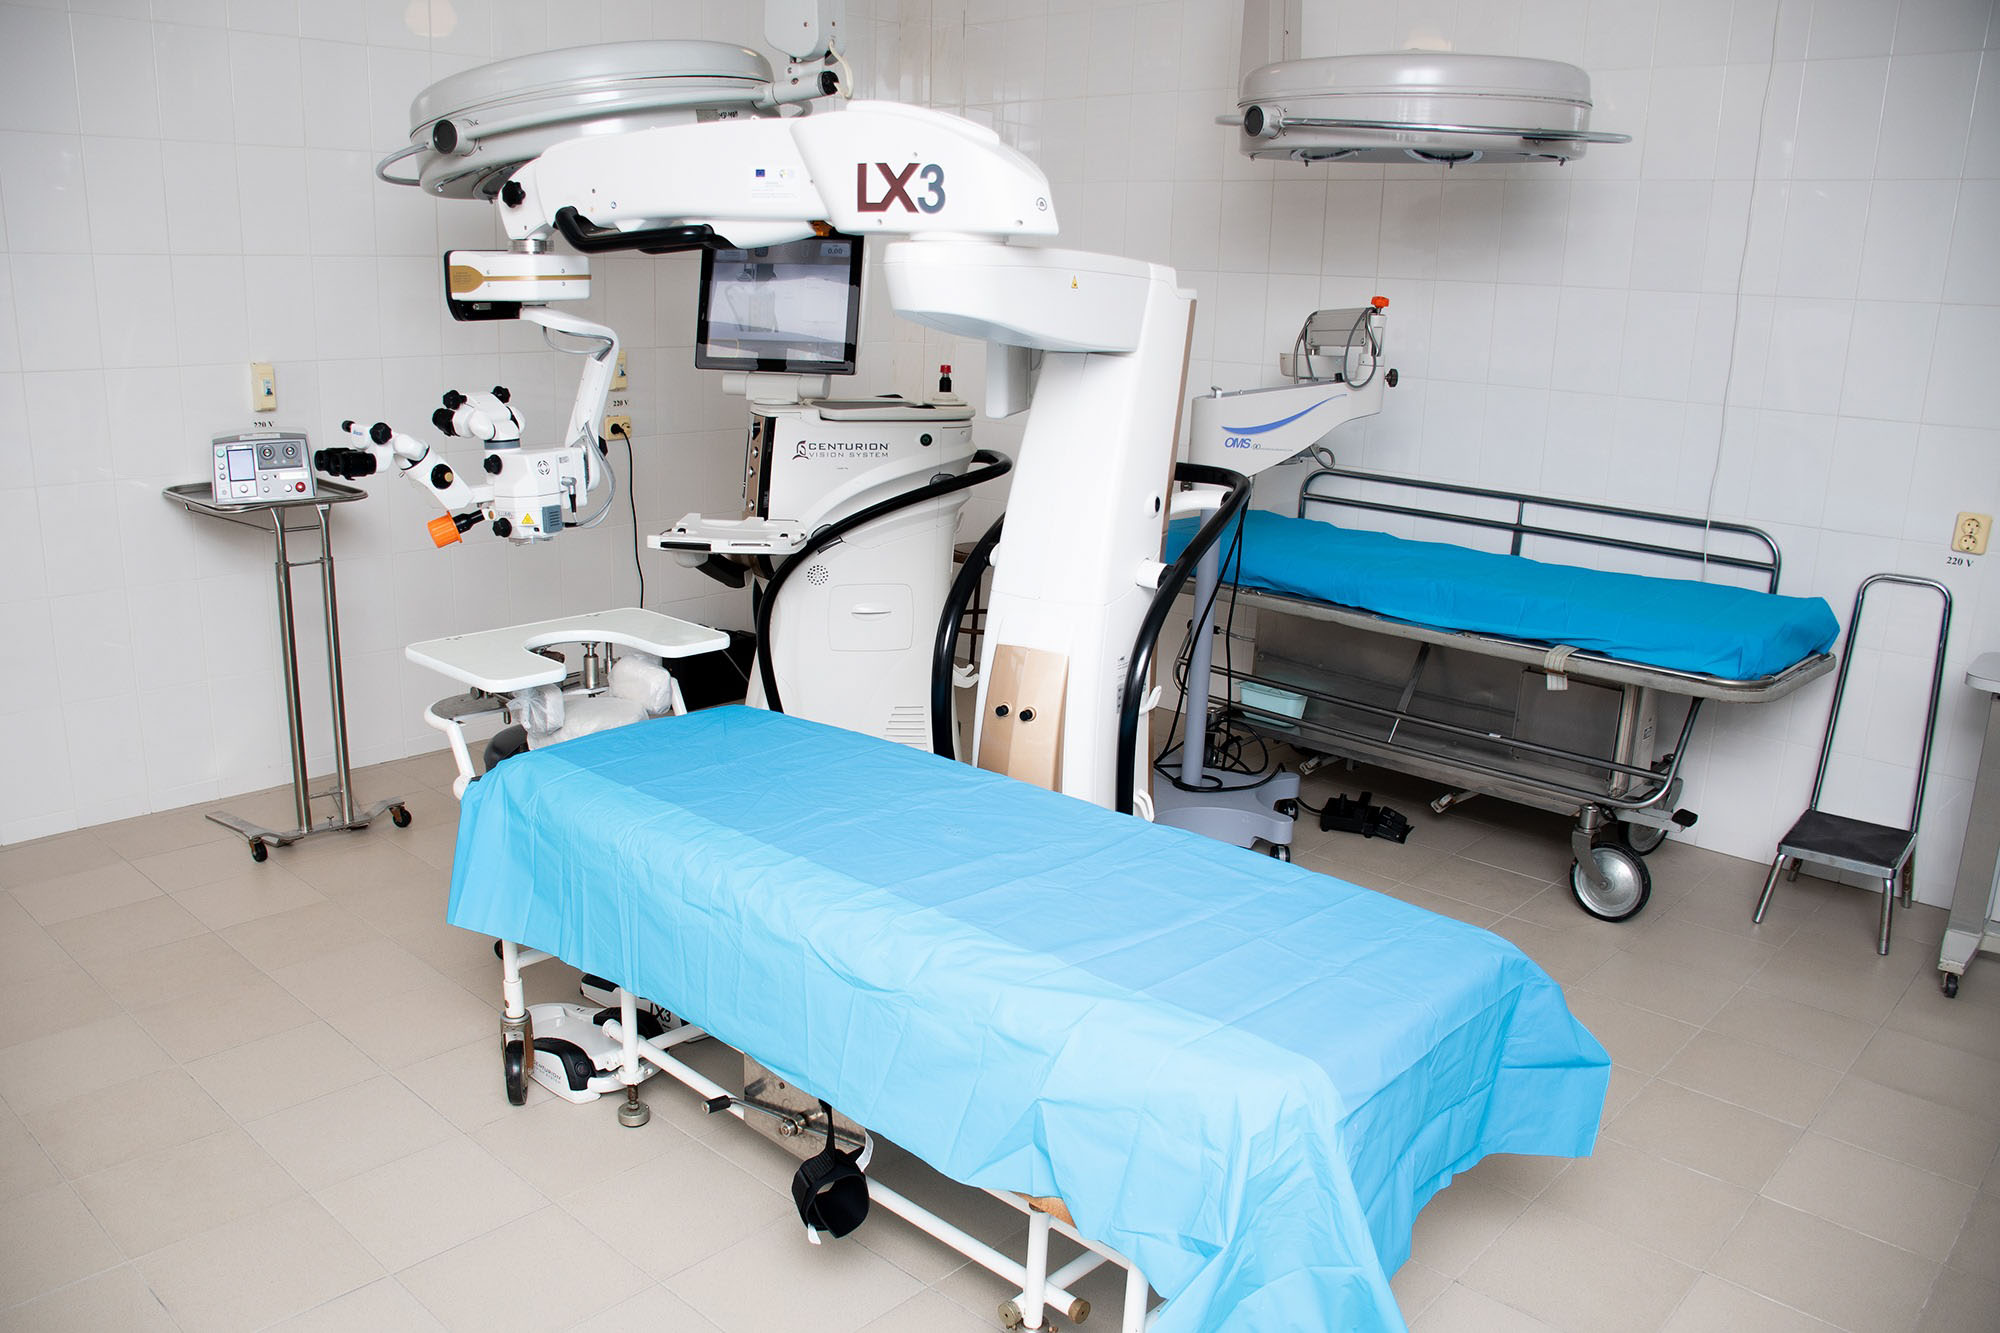 Сучасне обладнання для делікатних операцій на очах отримала міська лікарня (ФОТО)